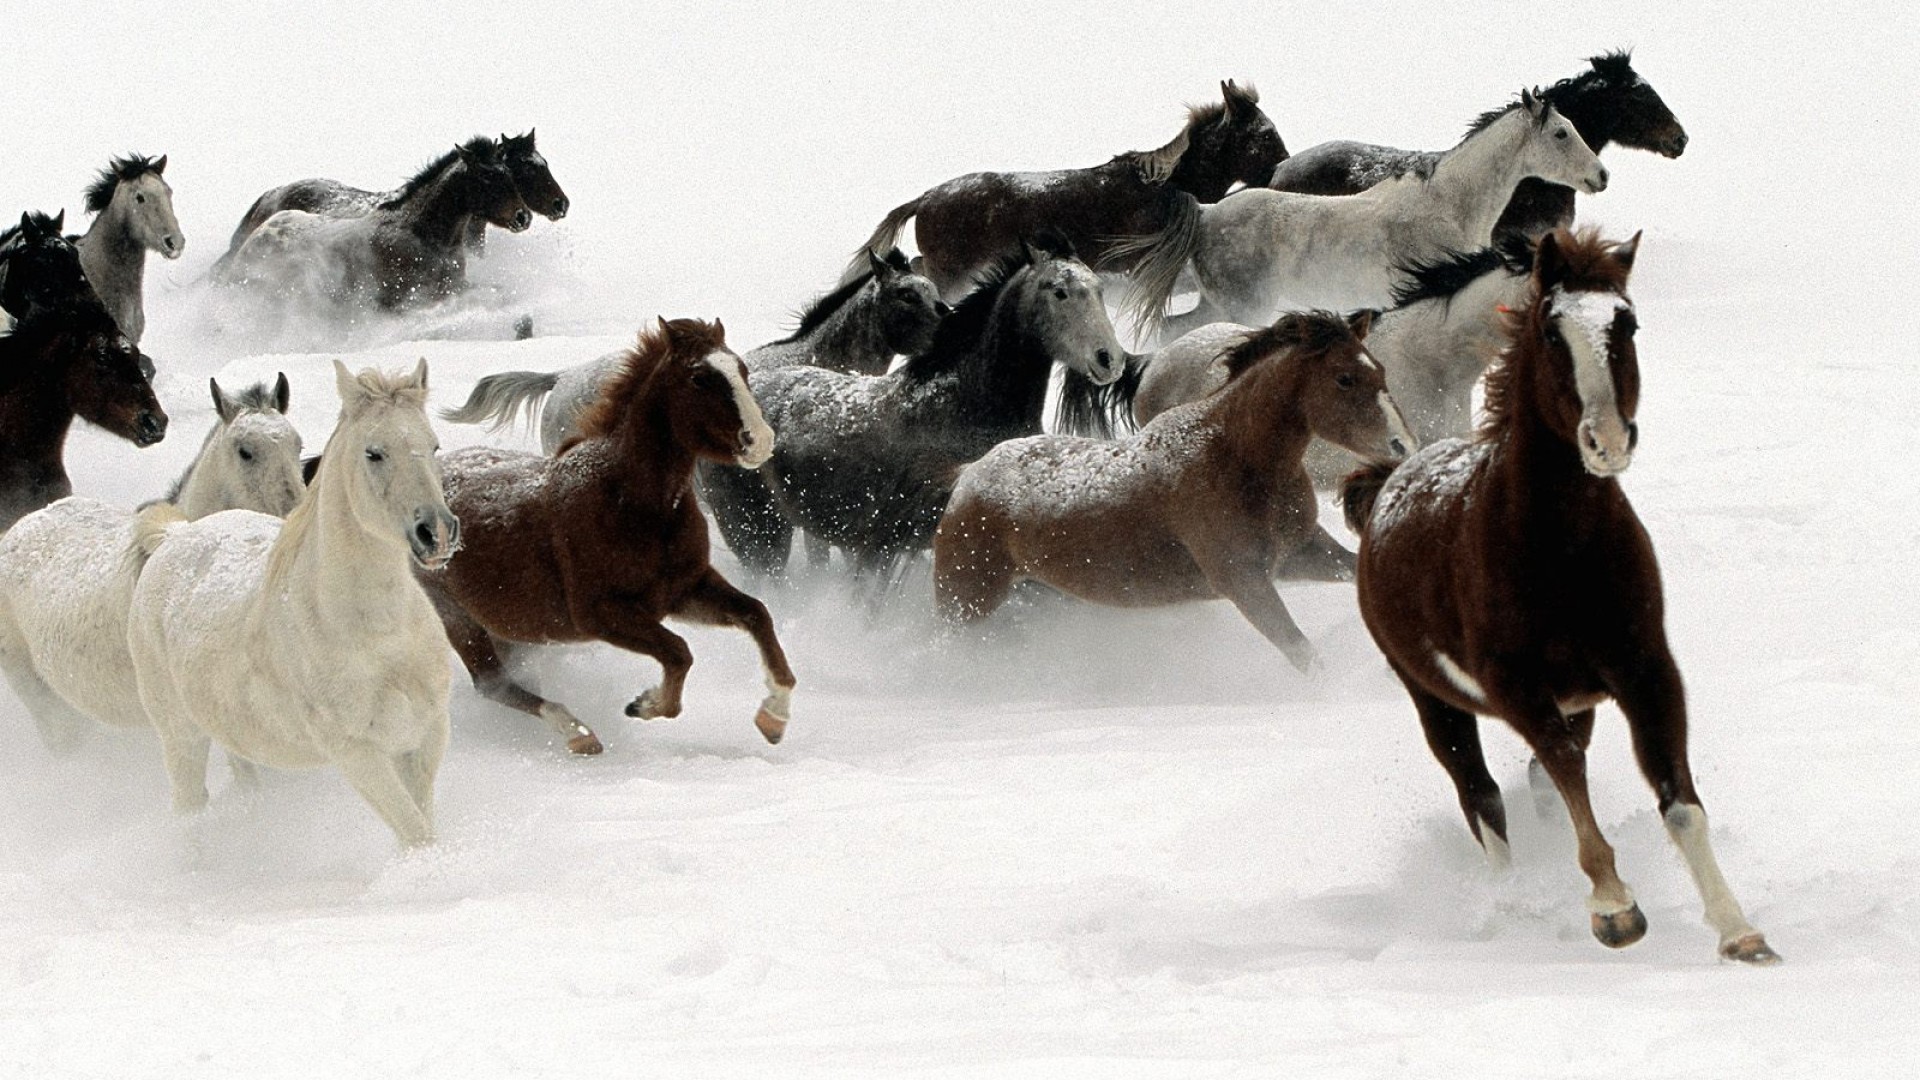 42+] Horses in the Snow Wallpaper - WallpaperSafari